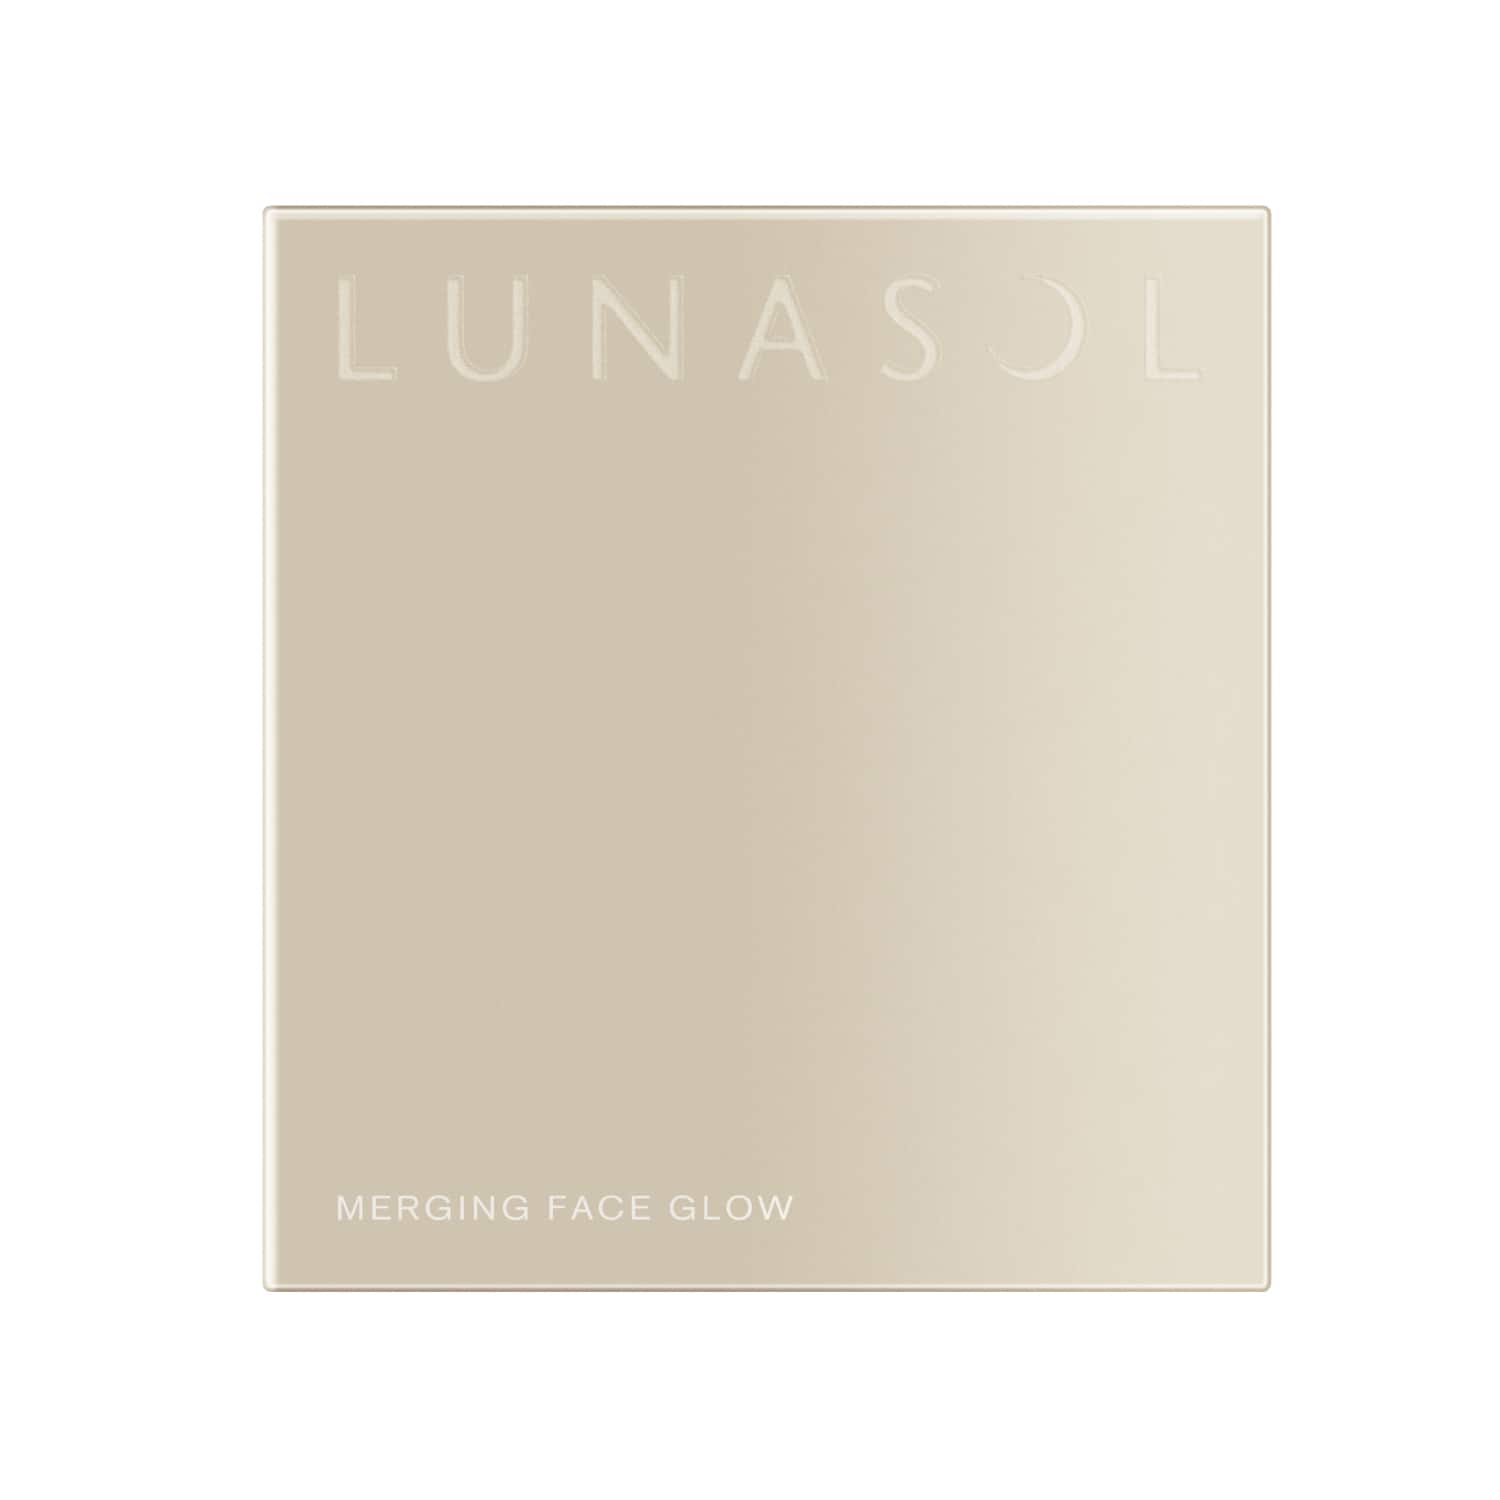 Lunasol Merging Face Glow - Ichiban Mart